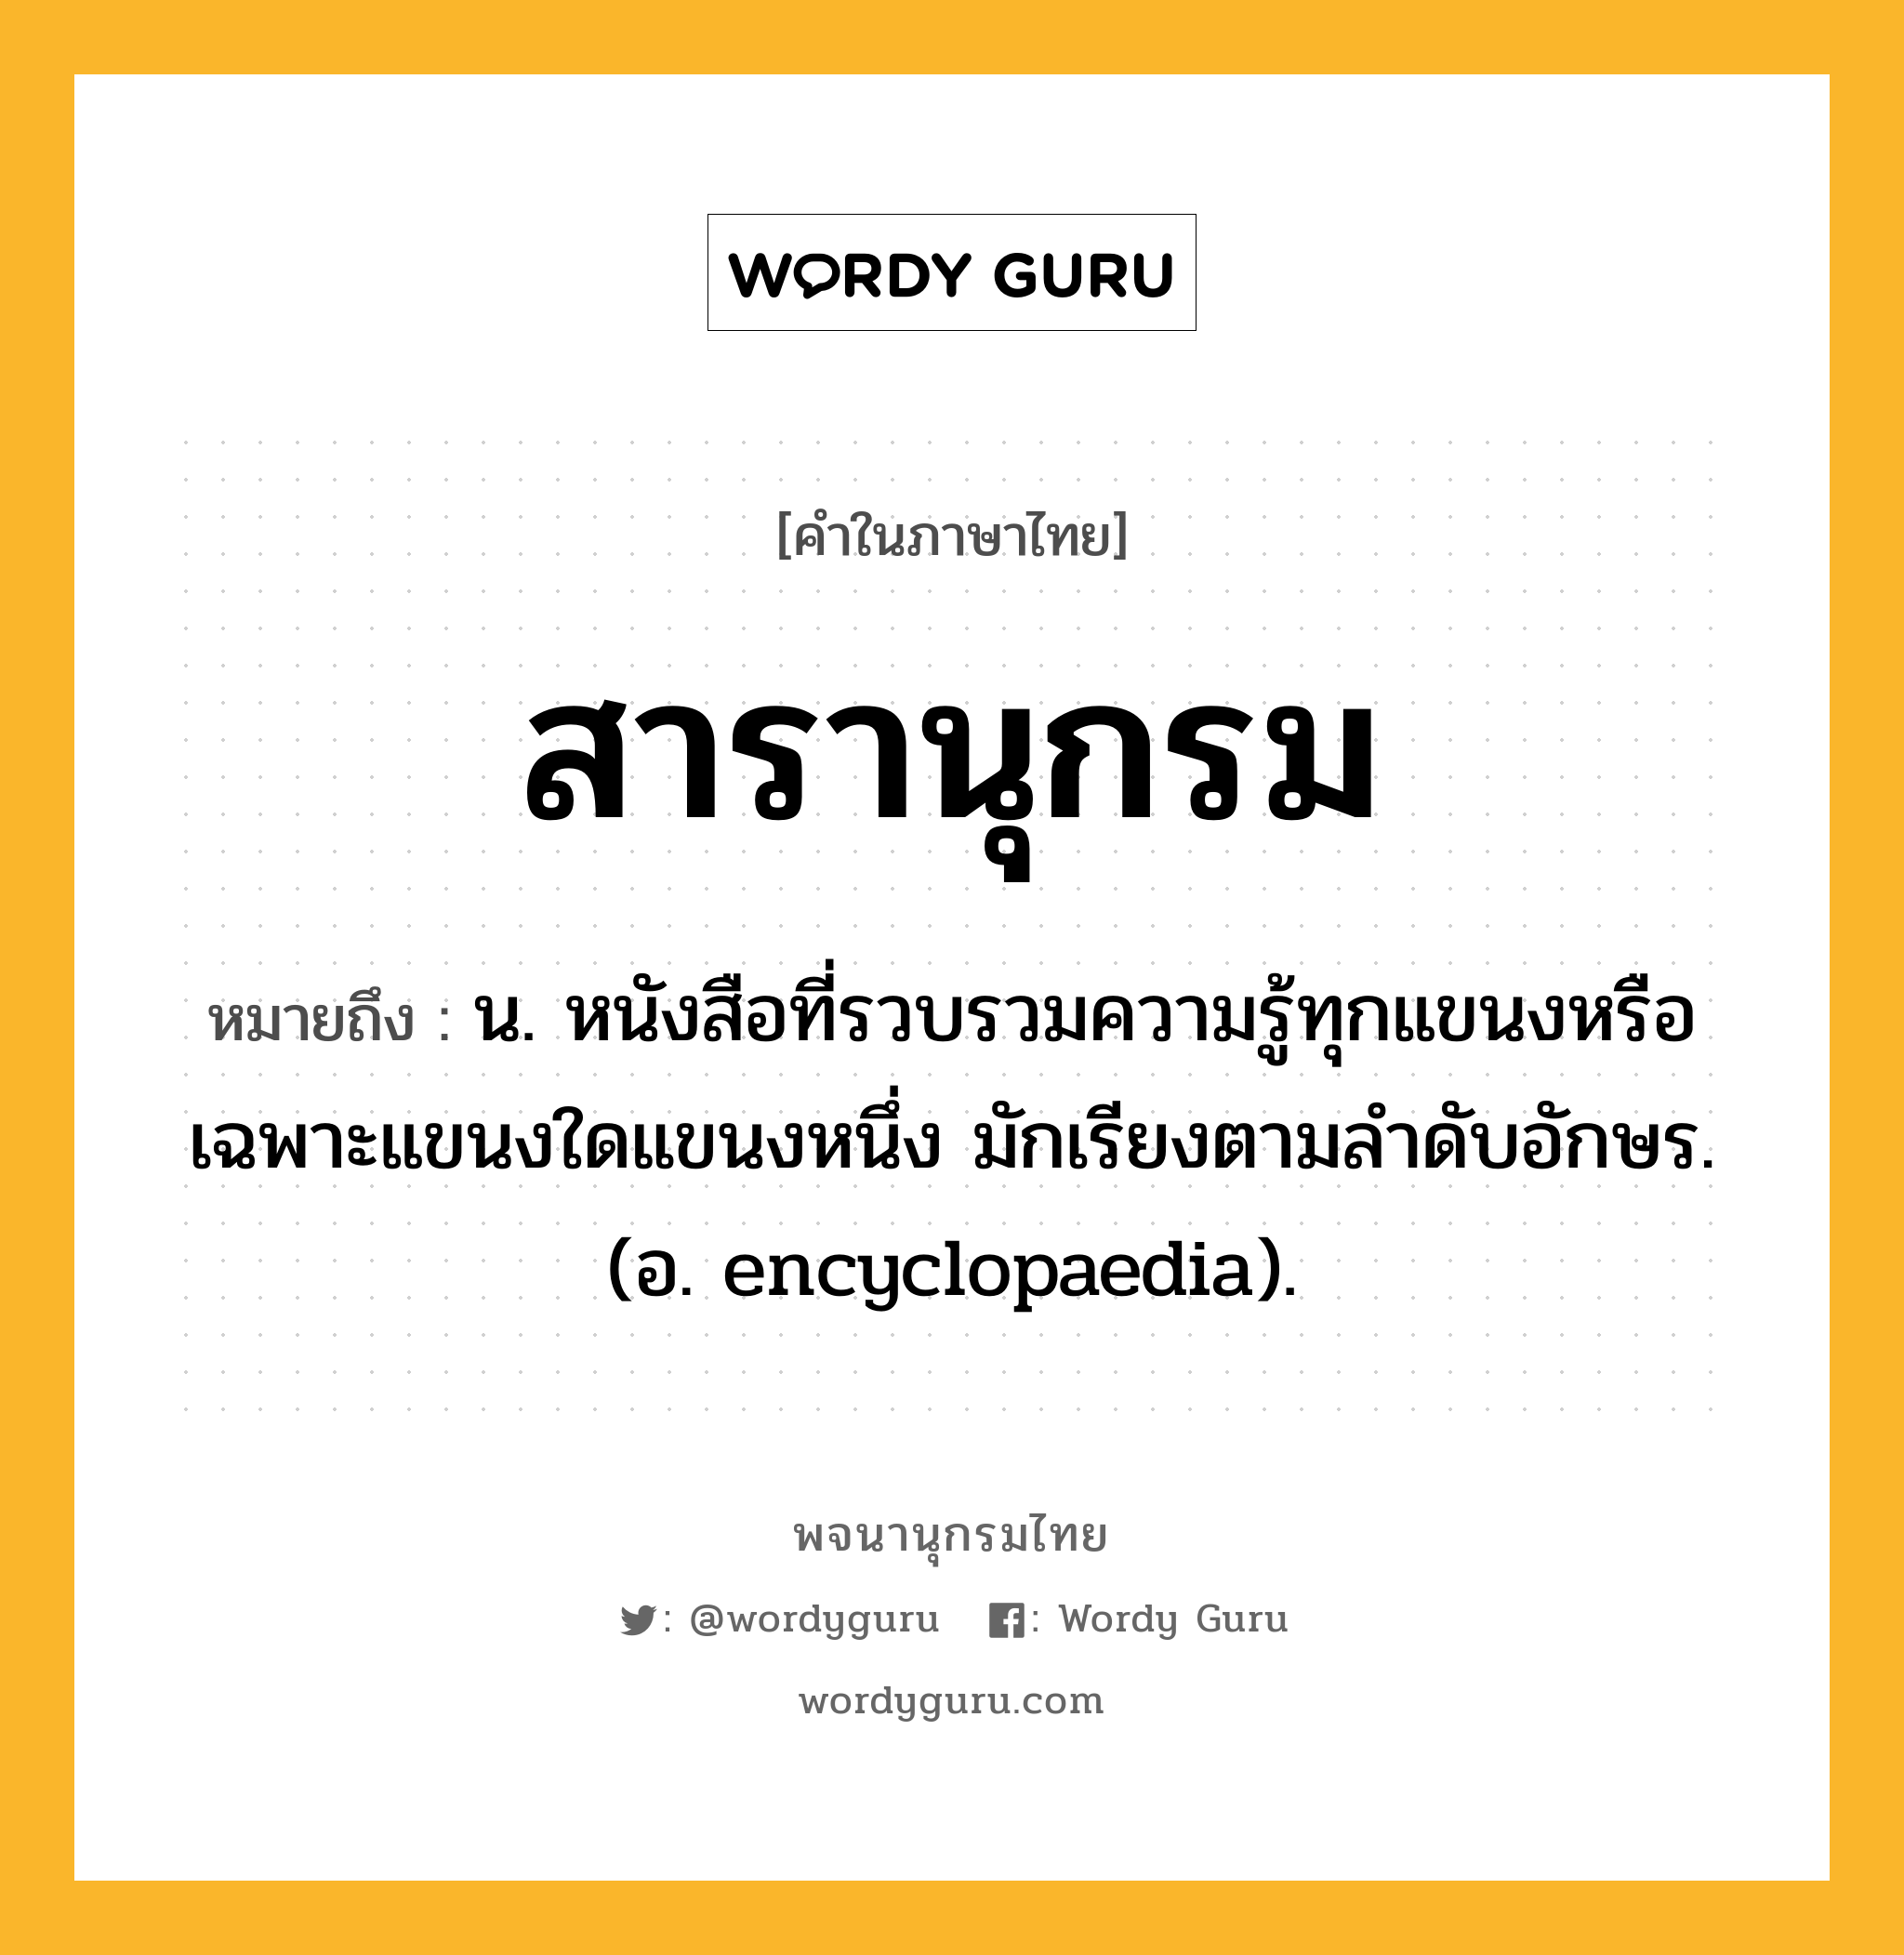 สารานุกรม หมายถึงอะไร?, คำในภาษาไทย สารานุกรม หมายถึง น. หนังสือที่รวบรวมความรู้ทุกแขนงหรือเฉพาะแขนงใดแขนงหนึ่ง มักเรียงตามลําดับอักษร.(อ. encyclopaedia).